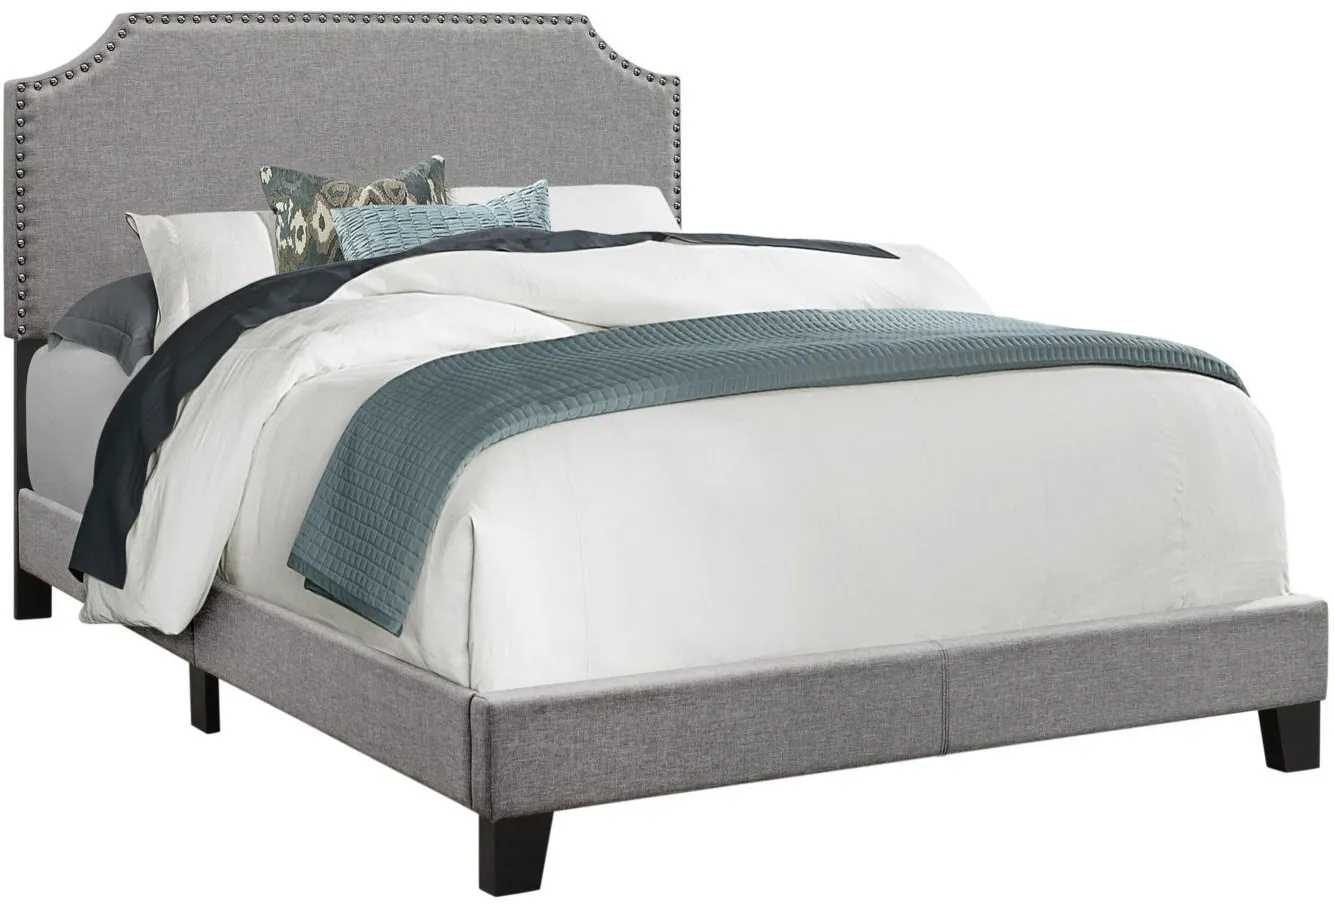 Monarch Specialties Full Bed in Grey by Monarch Specialties